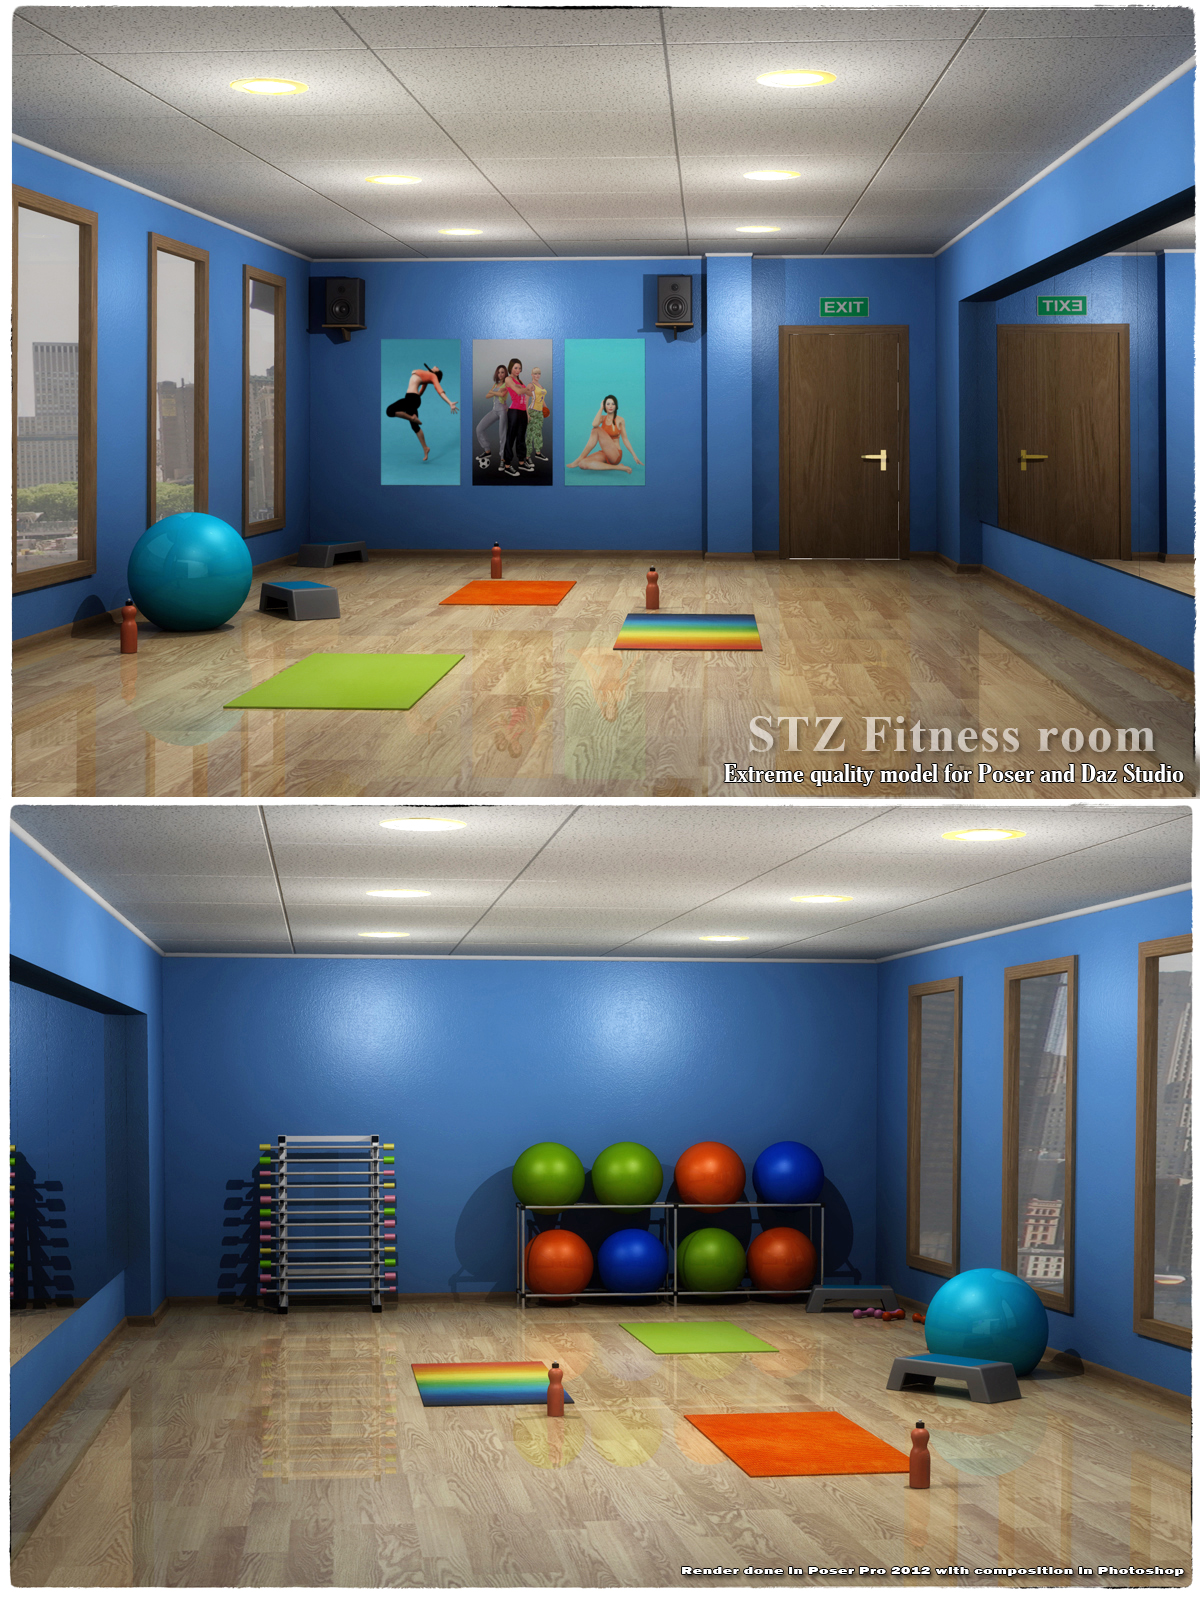 STZ Fitness room